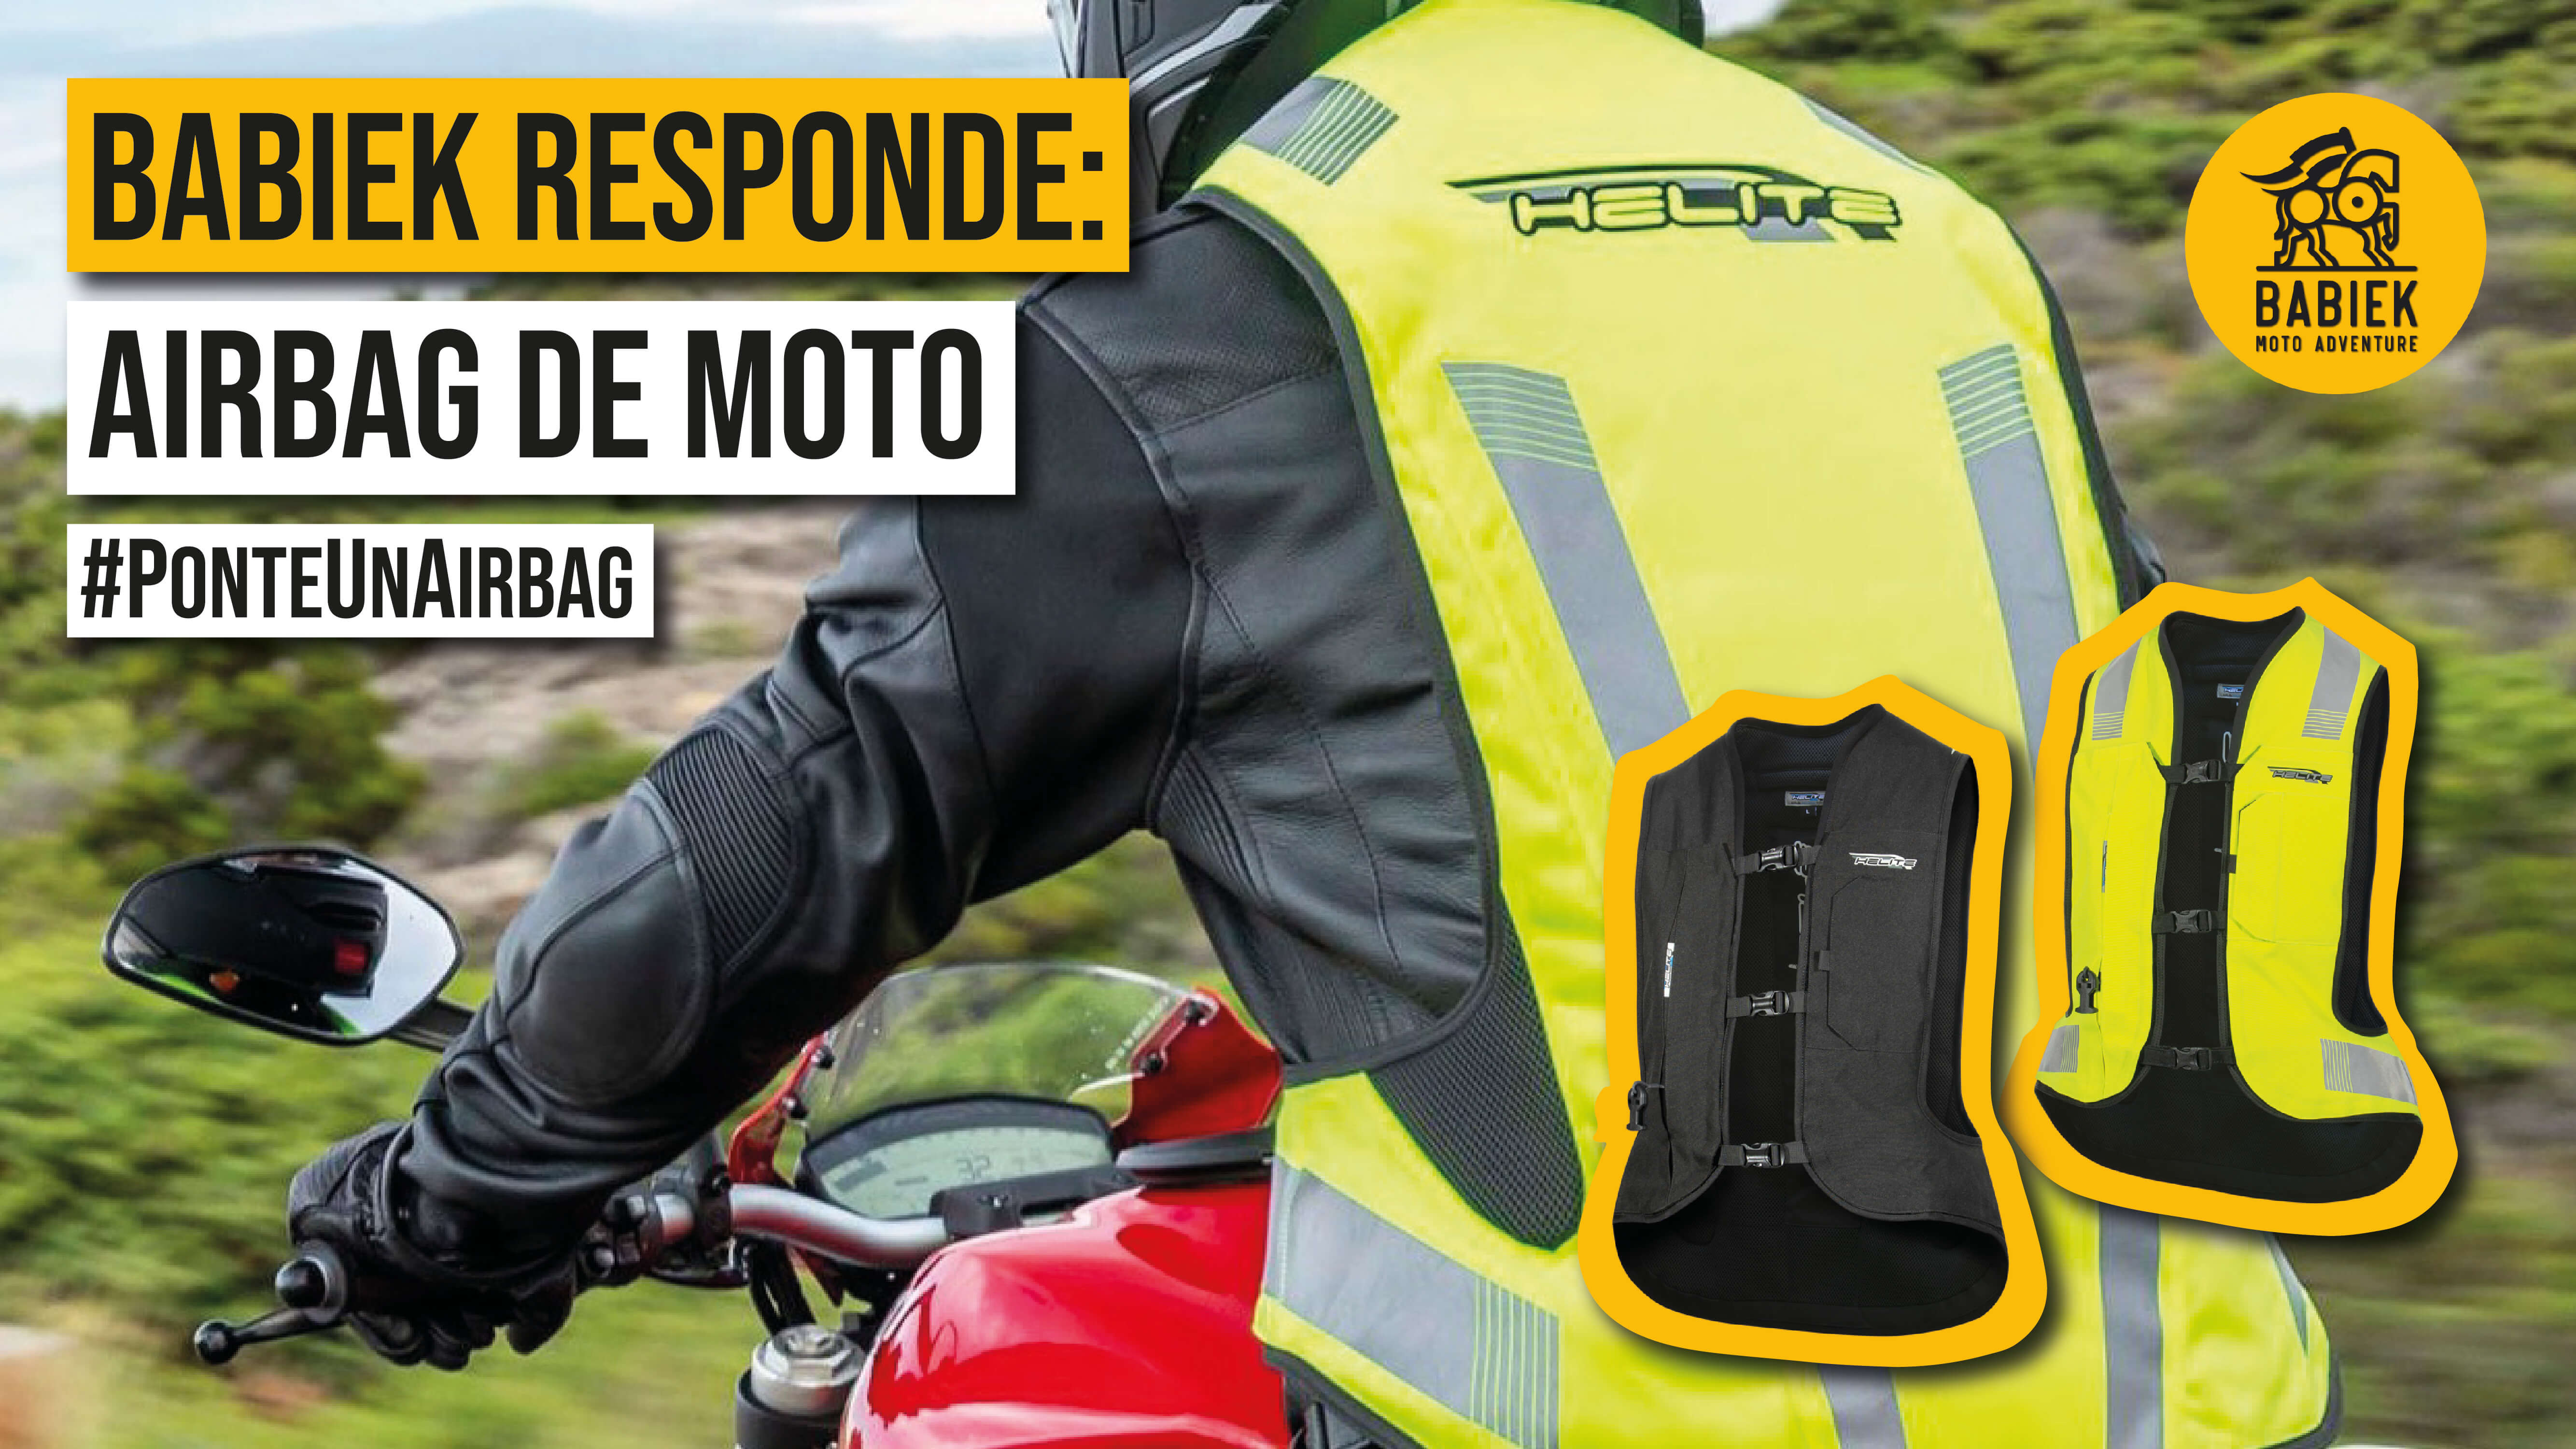 La importancia de protegerse con un chaleco airbag moto de Babiek